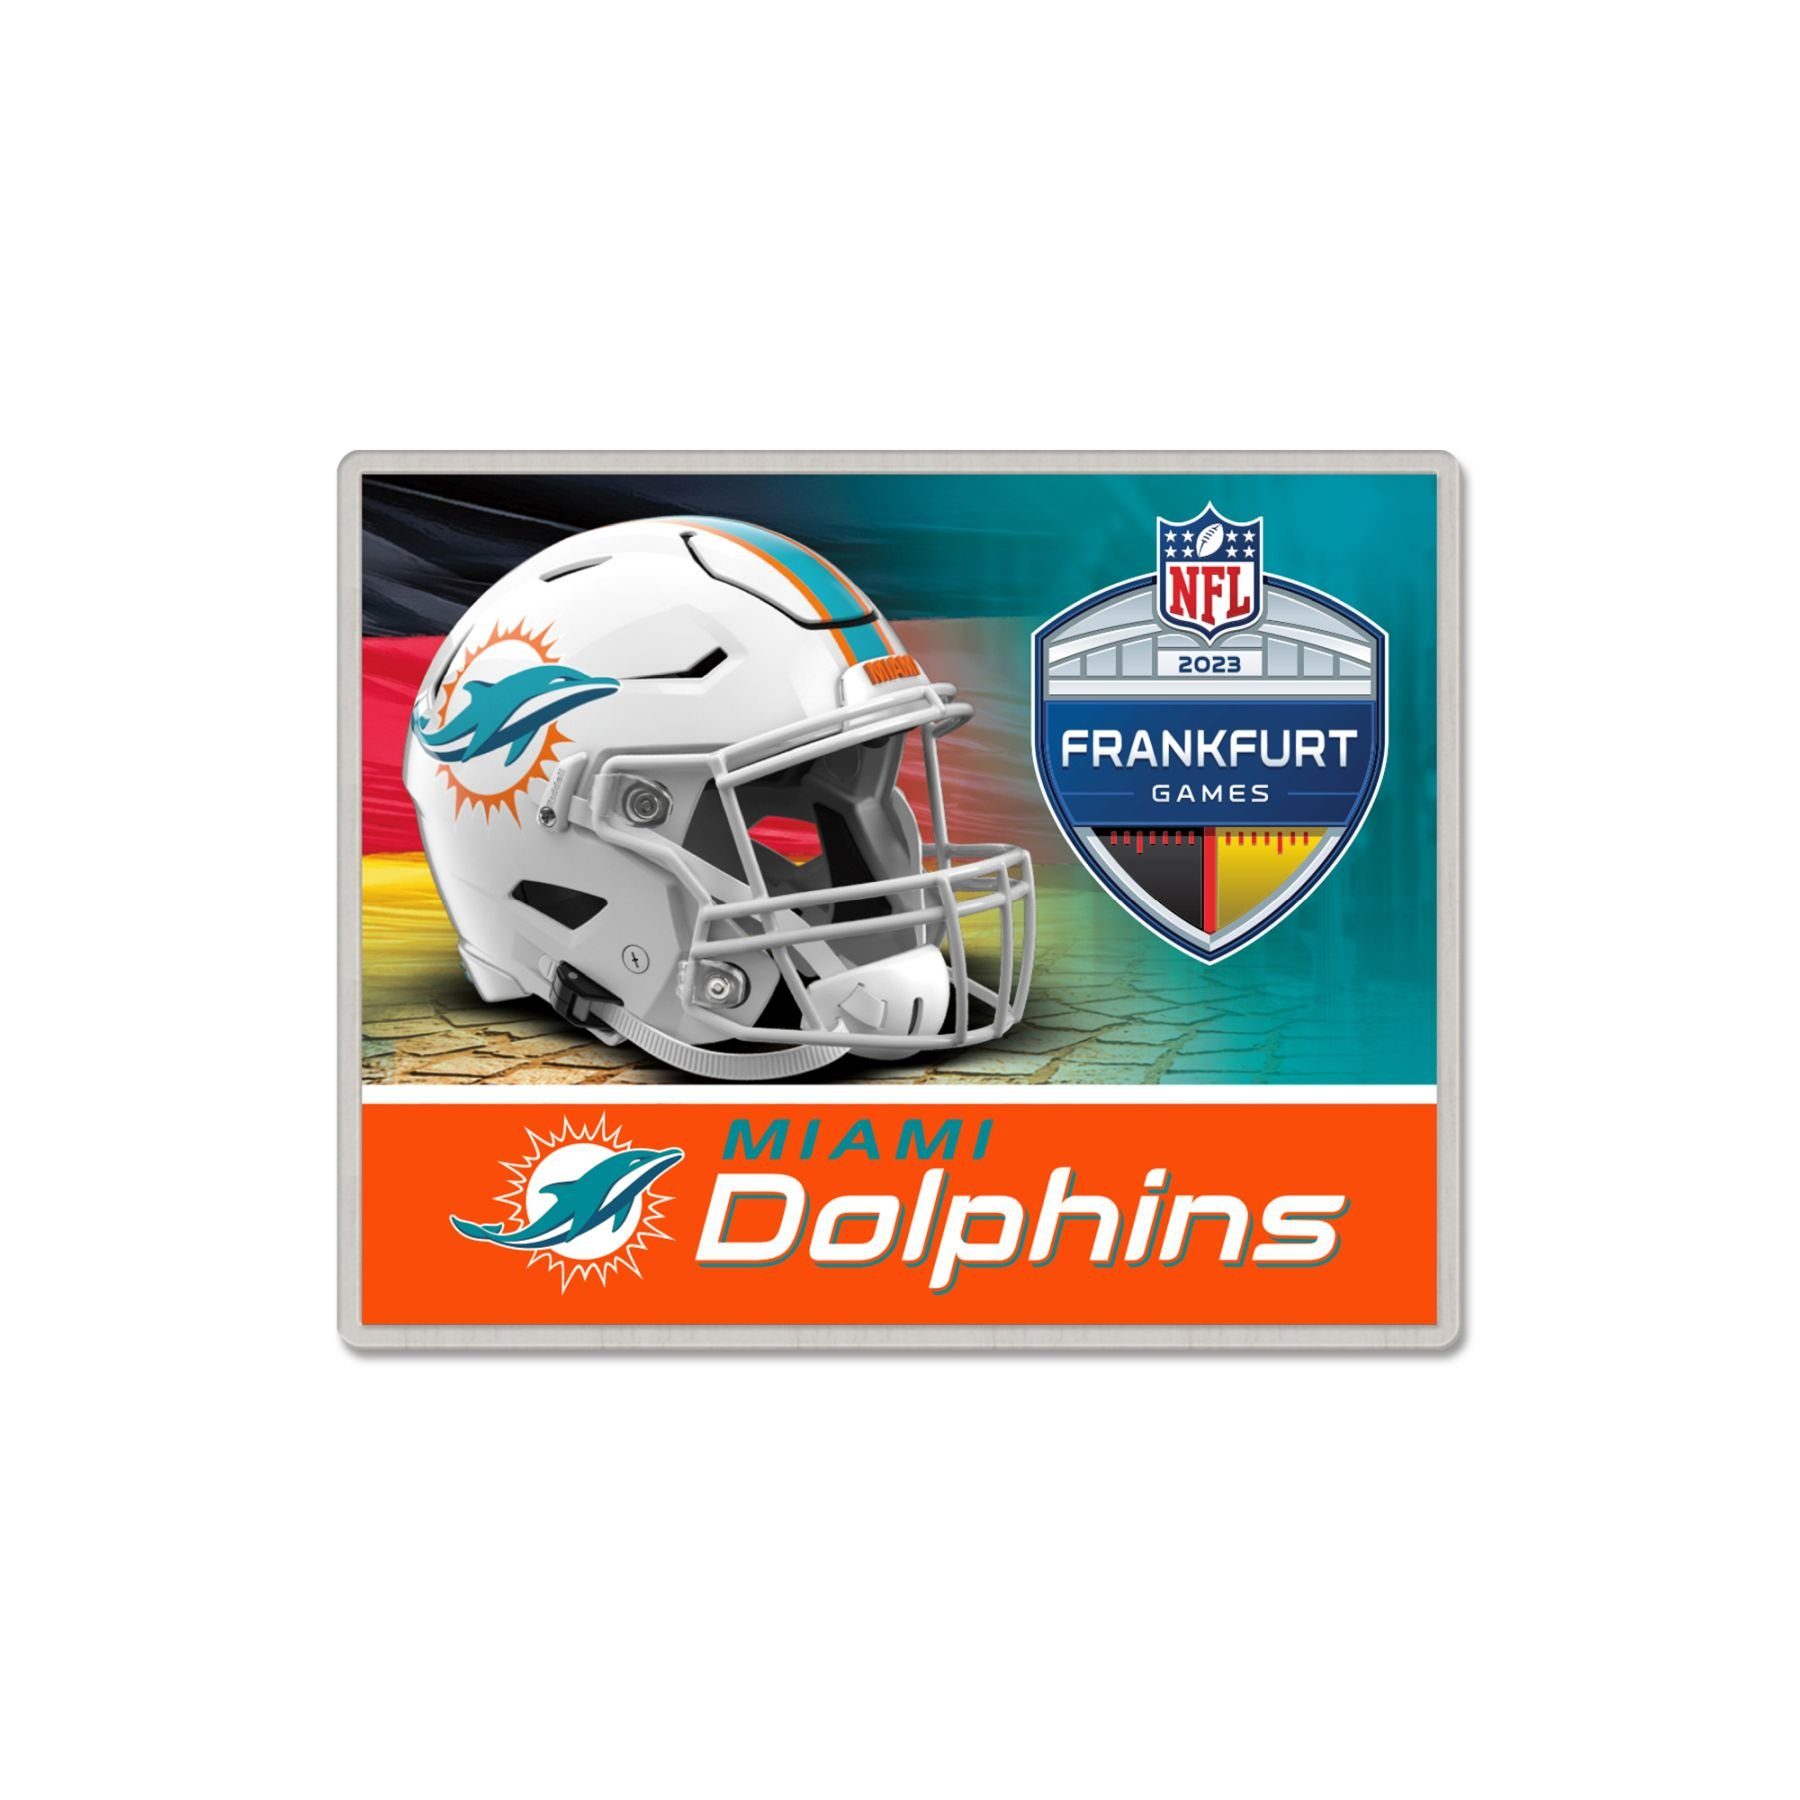 Dolphins WinCraft FRANKFURT Pins Pin Badge NFL Miami